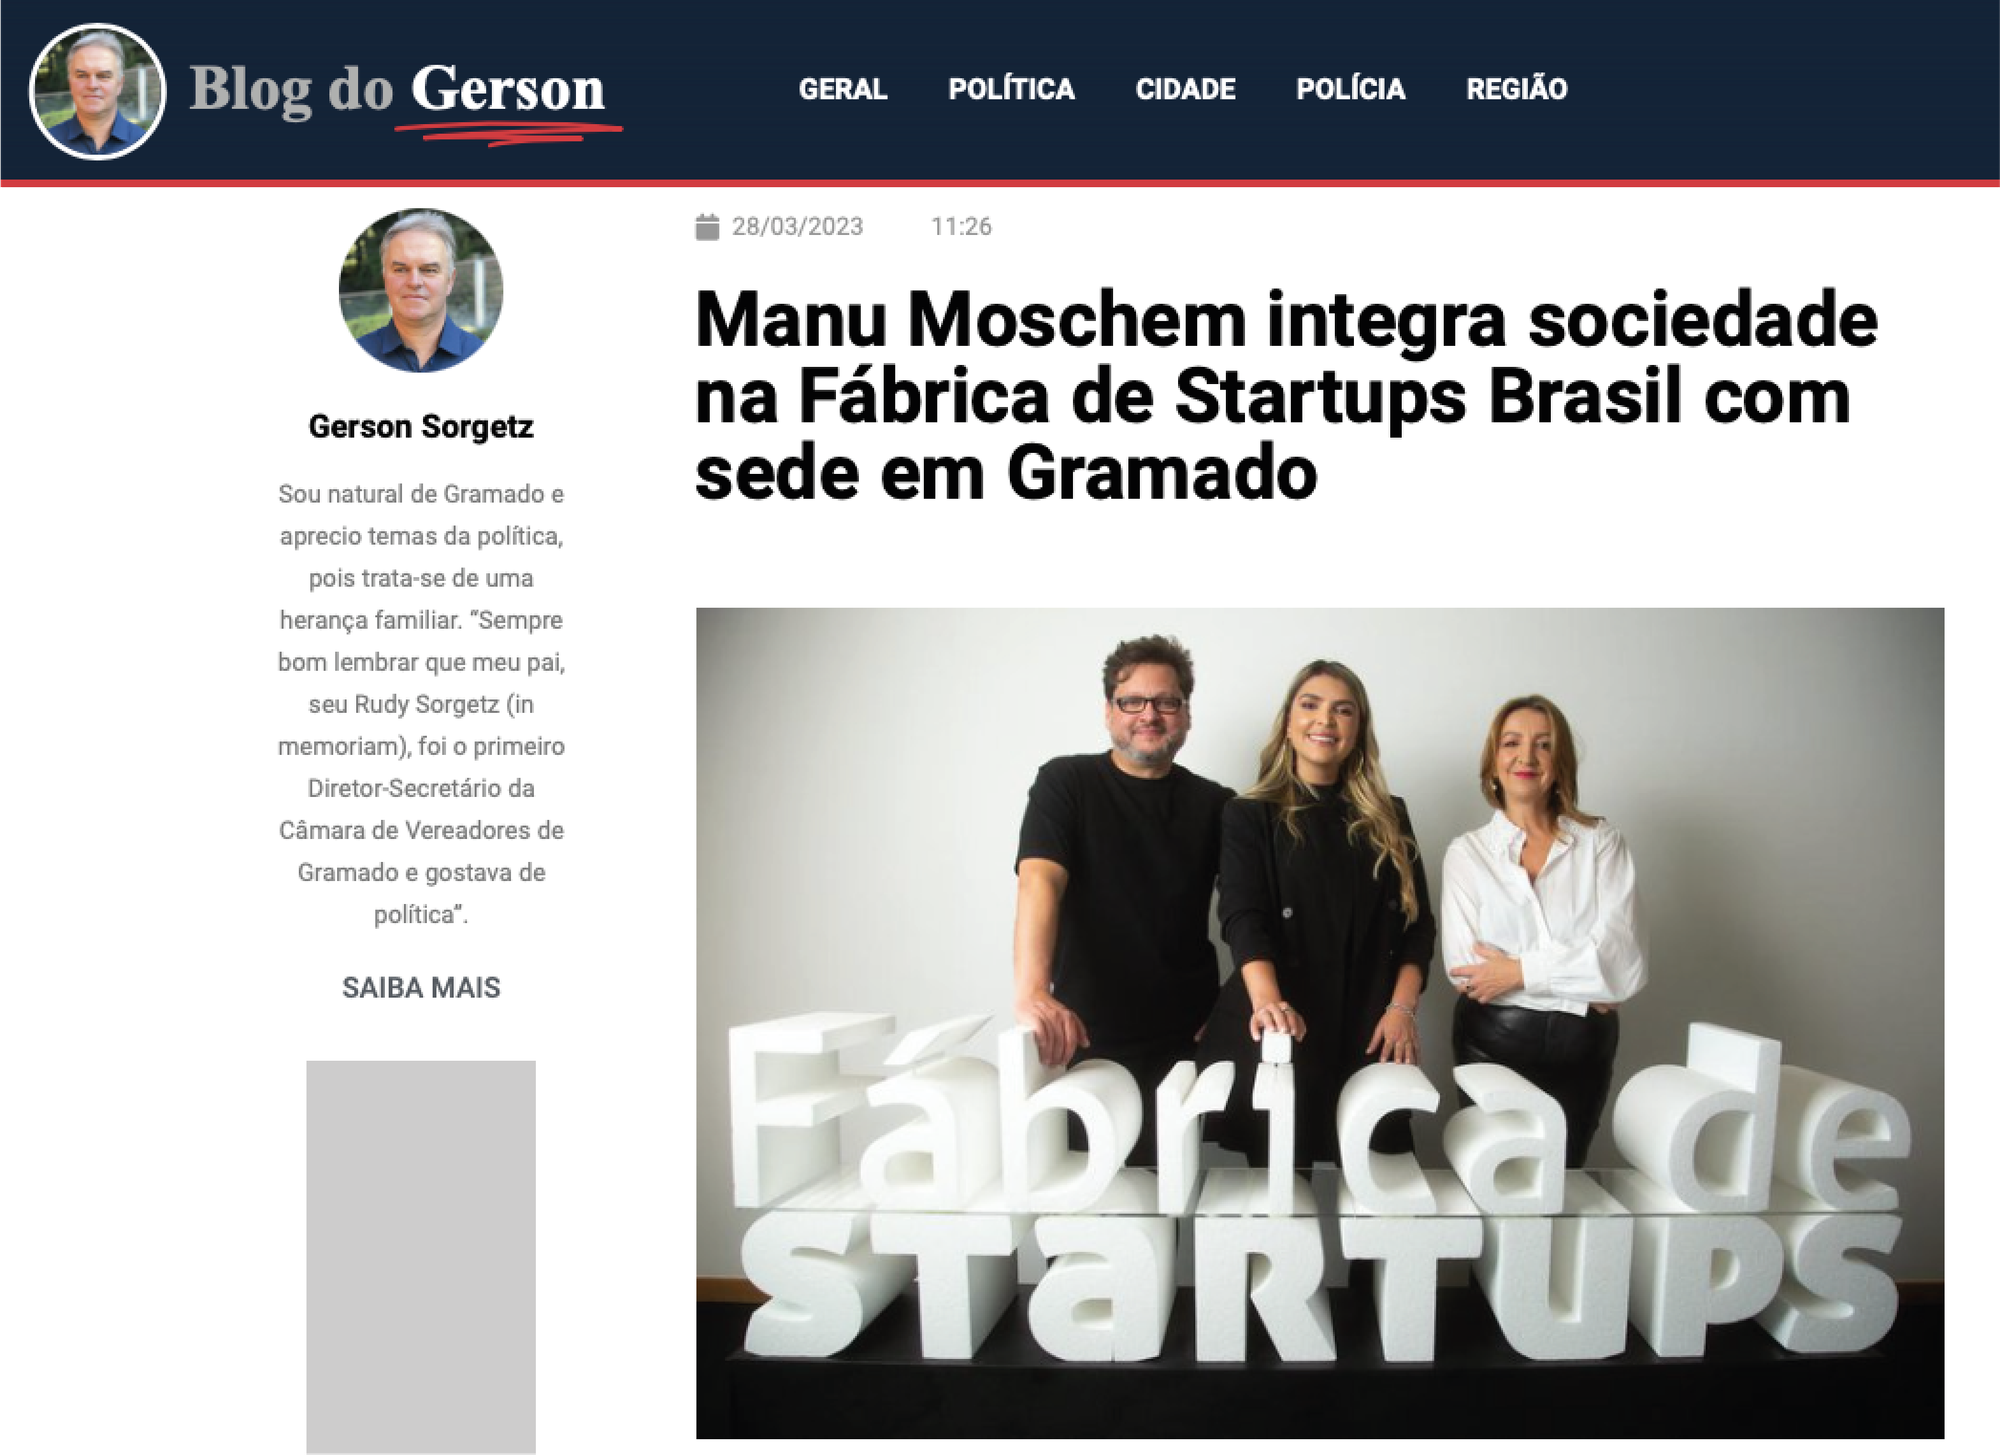 Manu Moschem integra sociedade na Fábrica de Startups Brasil com sede em Gramado